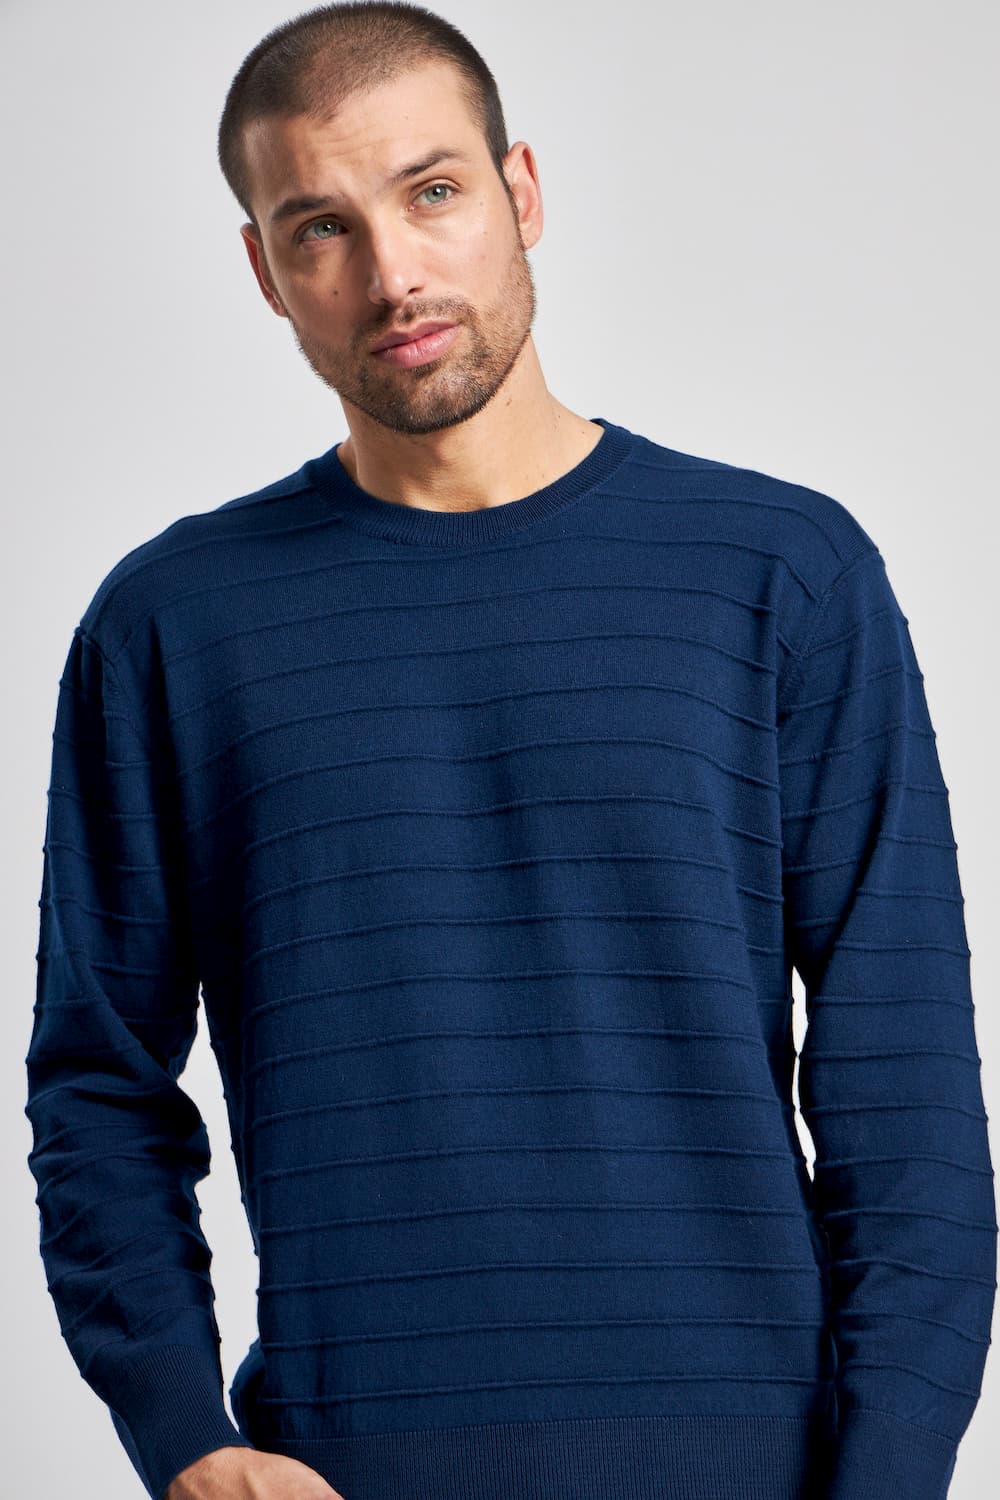 Sweater Merino Humano para Hombre - Koshkil